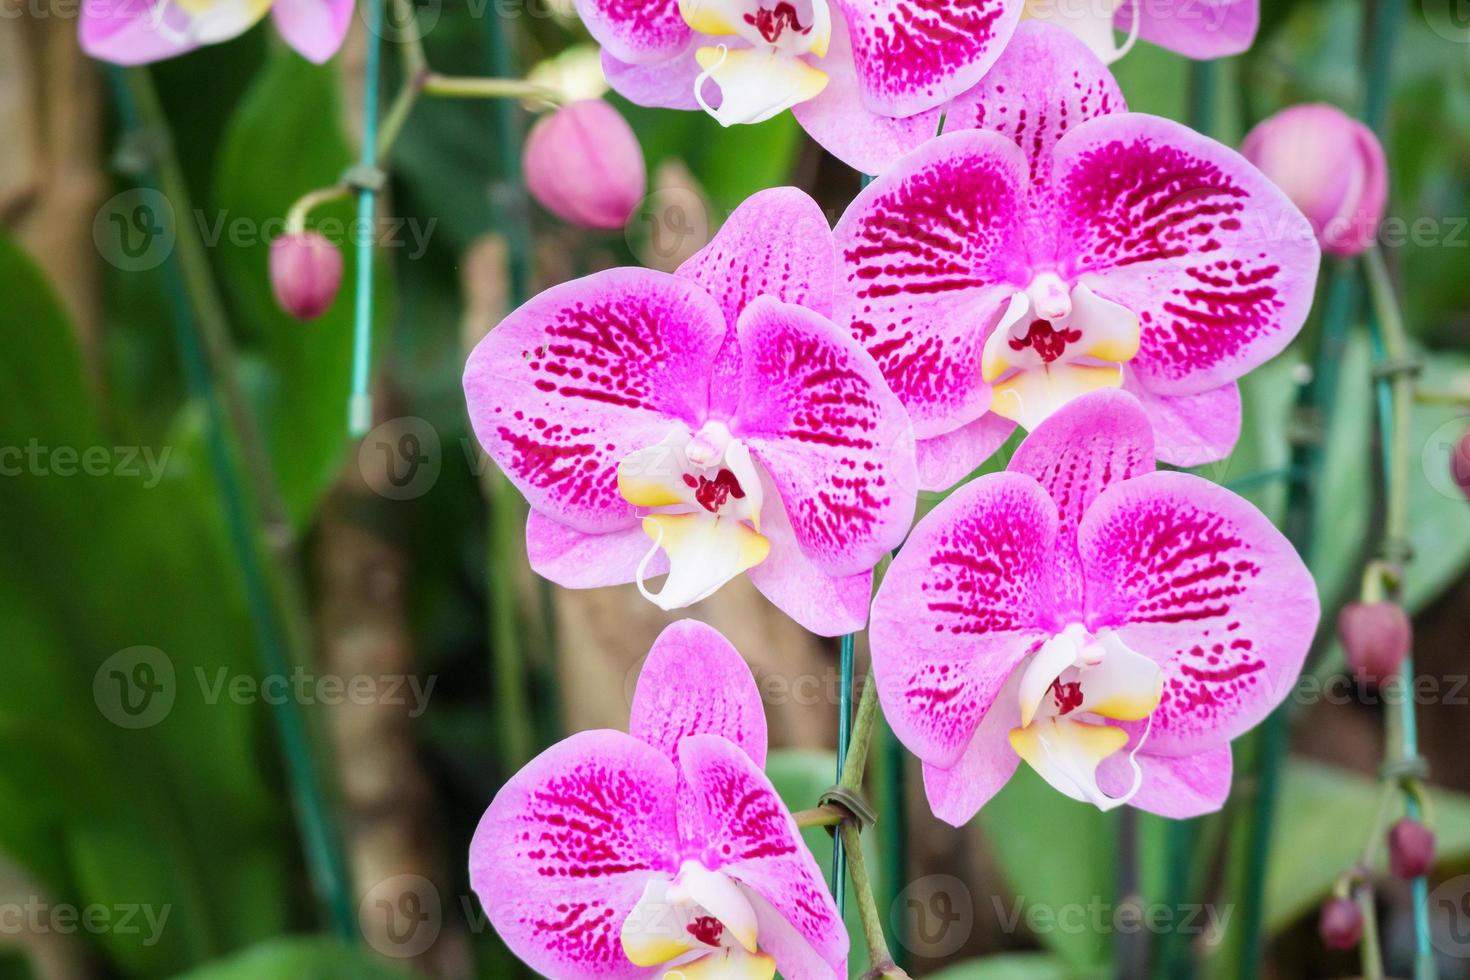 hermosa flor de orquídea phalaenopsis que florece en el fondo floral del jardín foto